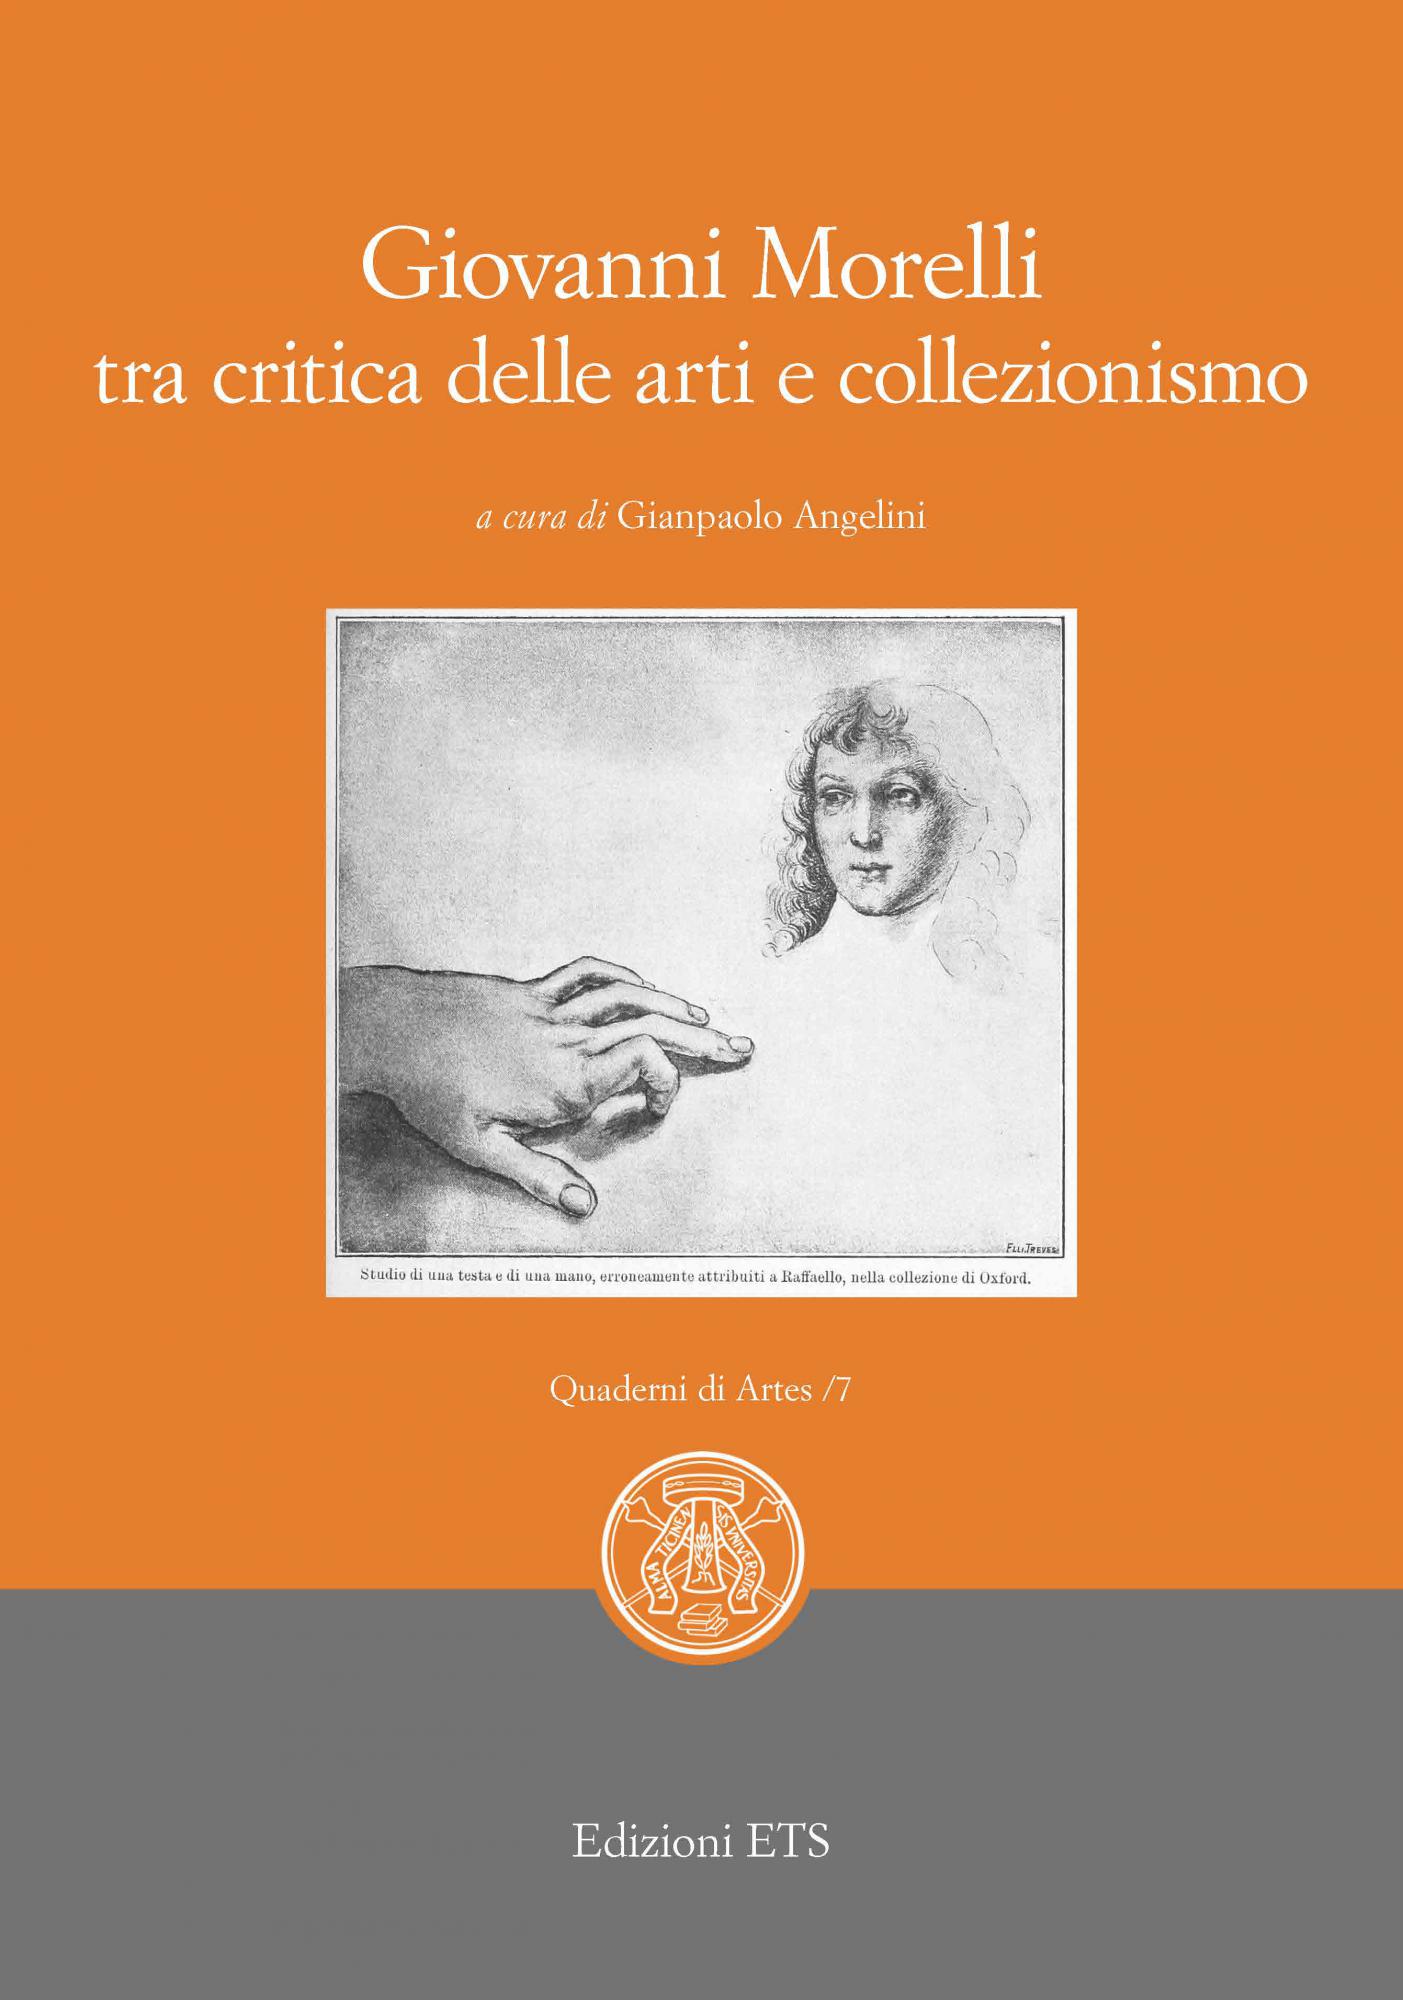 Giovanni Morelli tra critica delle arti e collezionismo